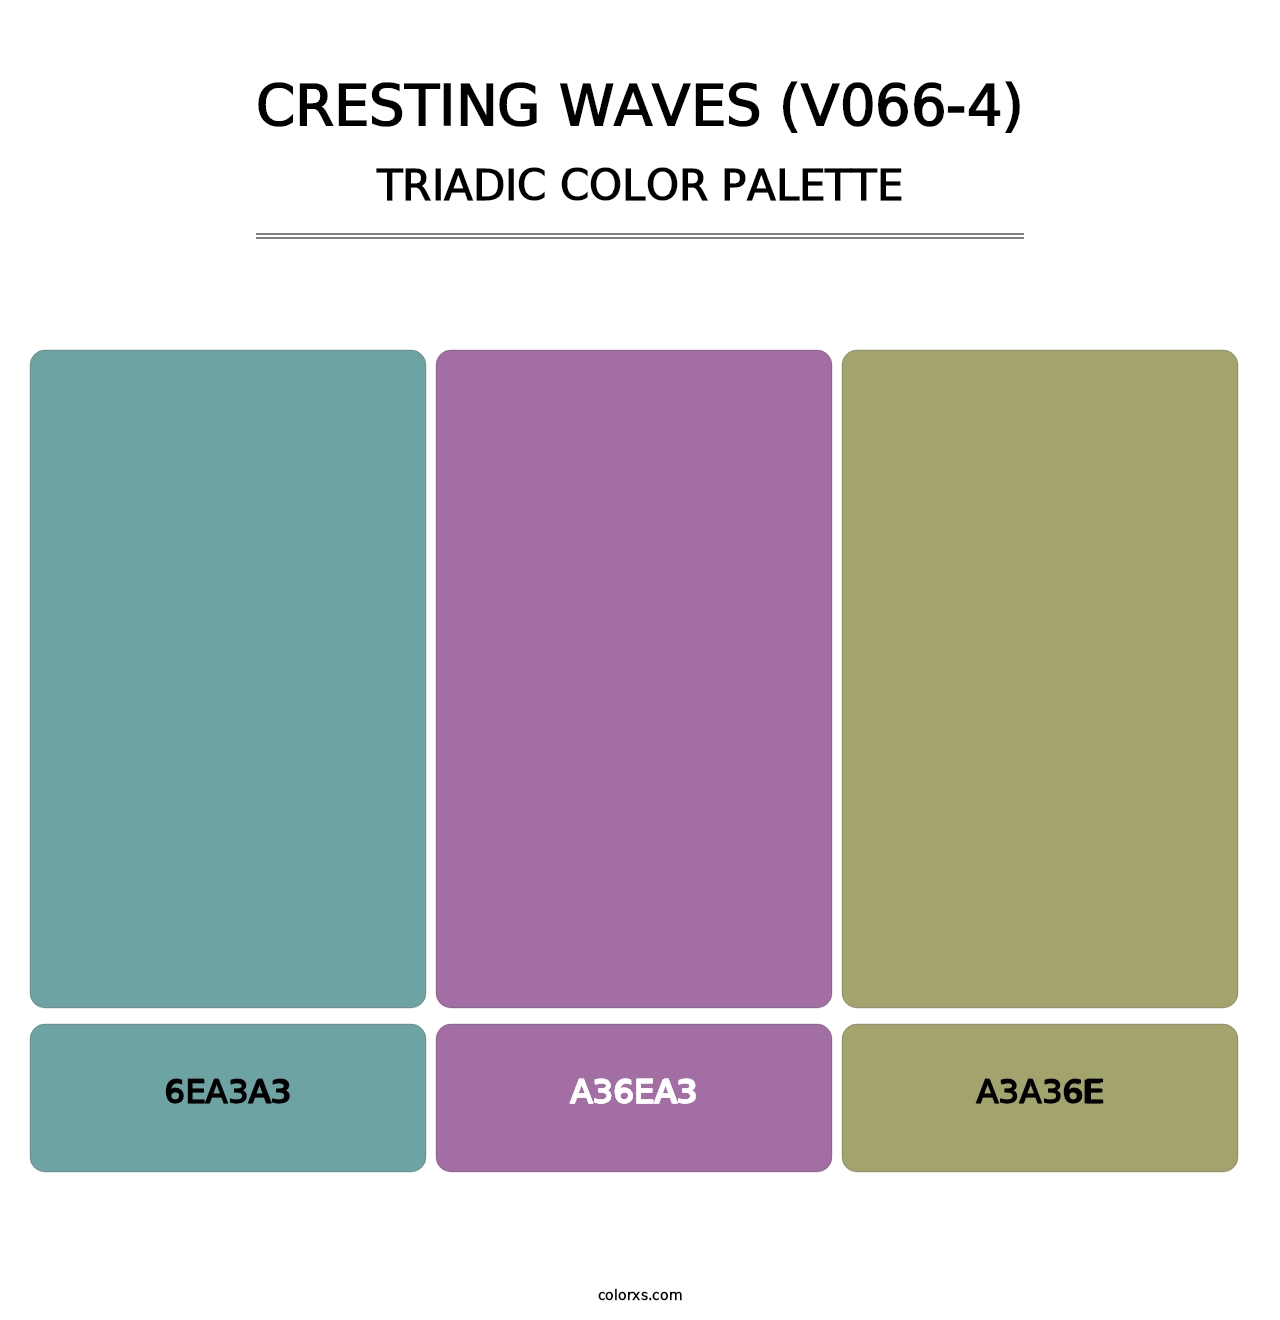 Cresting Waves (V066-4) - Triadic Color Palette